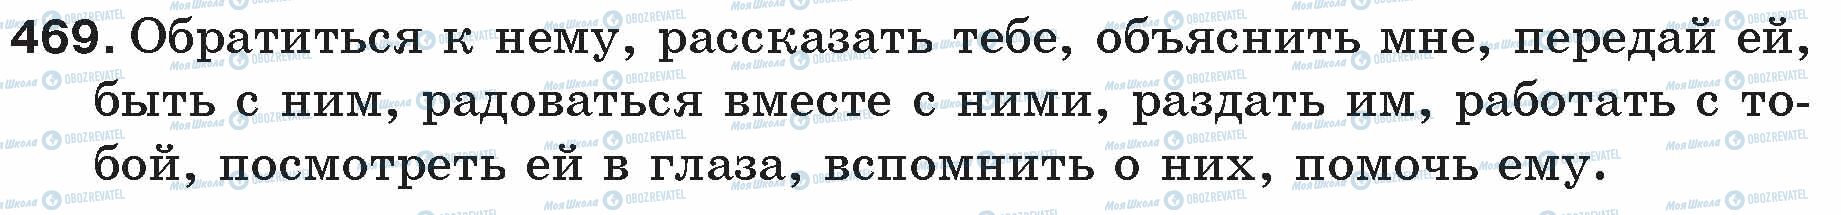 ГДЗ Русский язык 5 класс страница 469